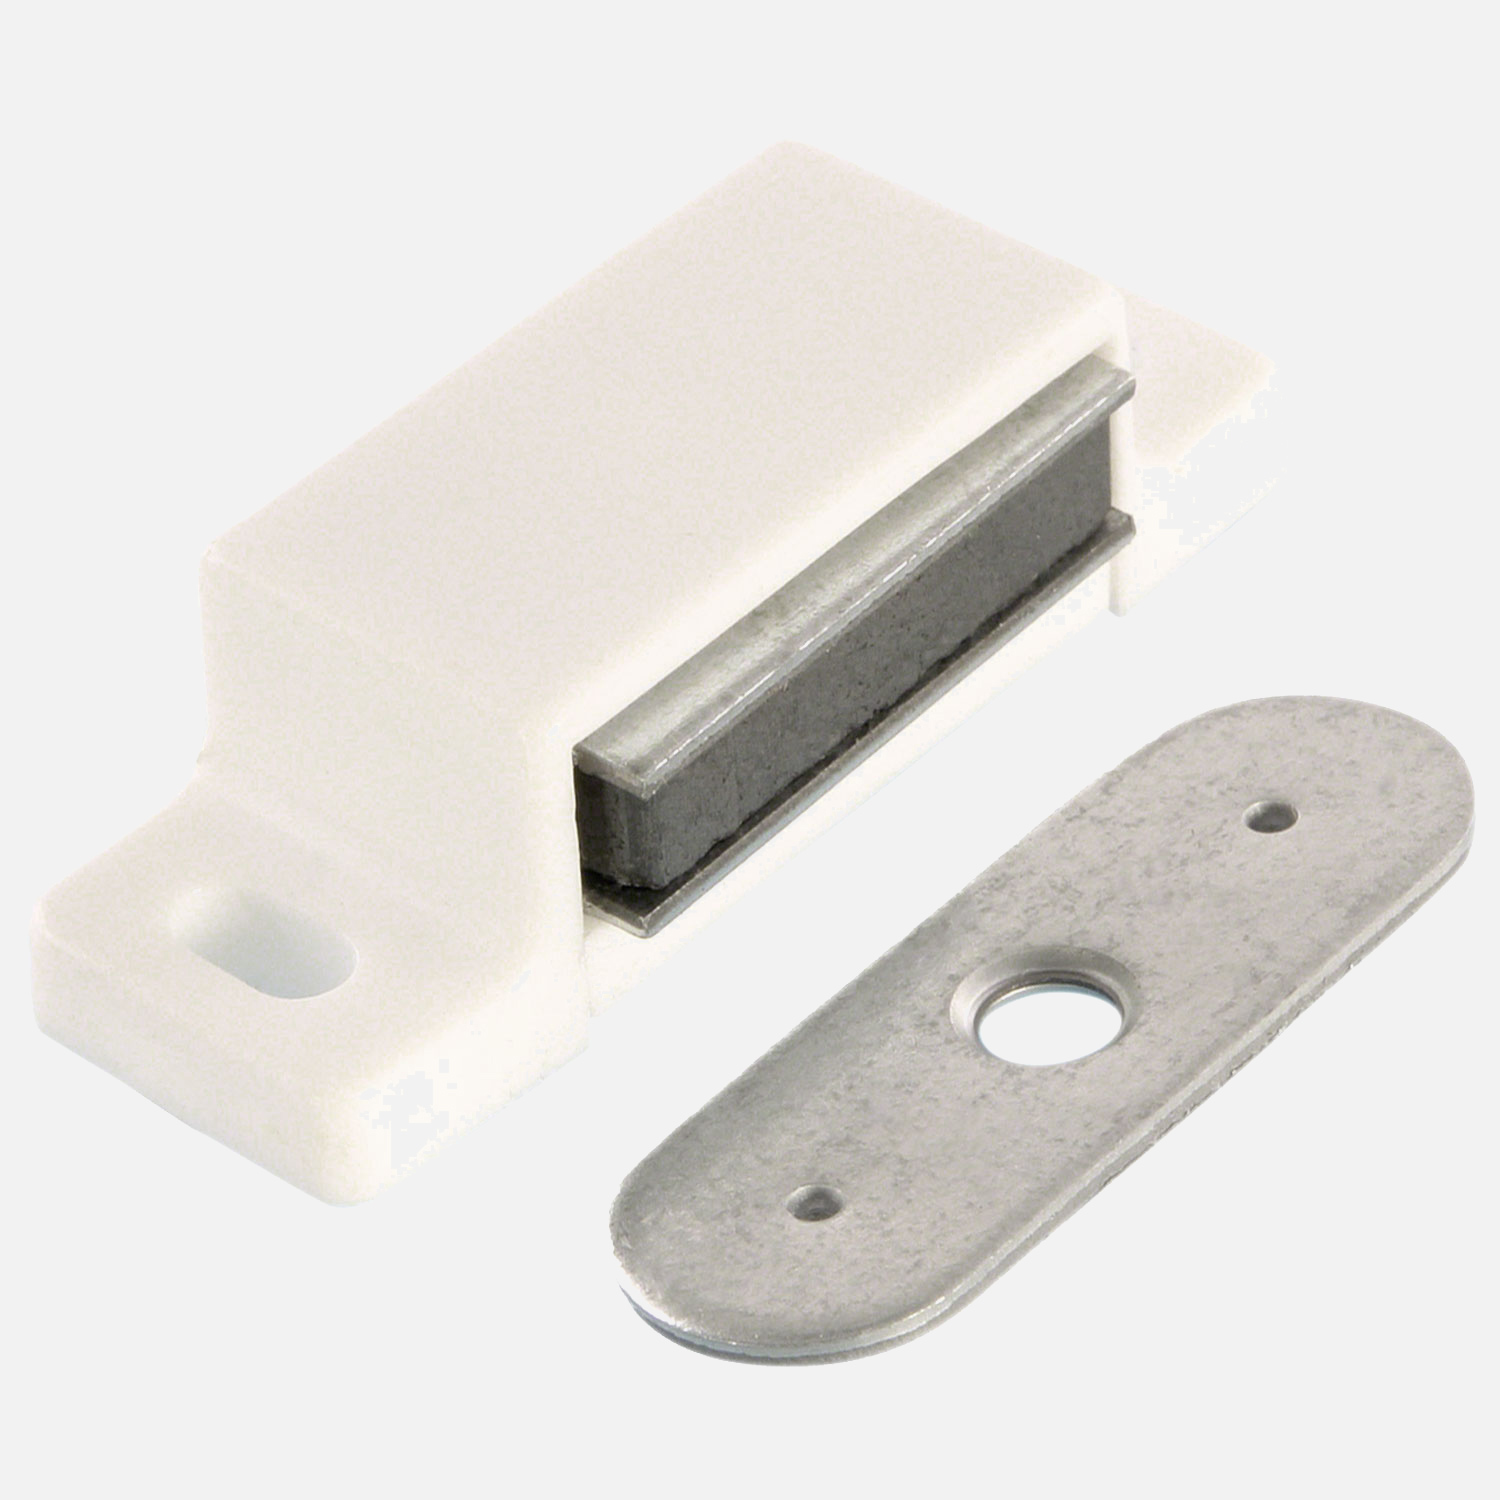 1 HSI Magnetschnäpper - mit fester Platte - weiß - Haftkraft 5kg